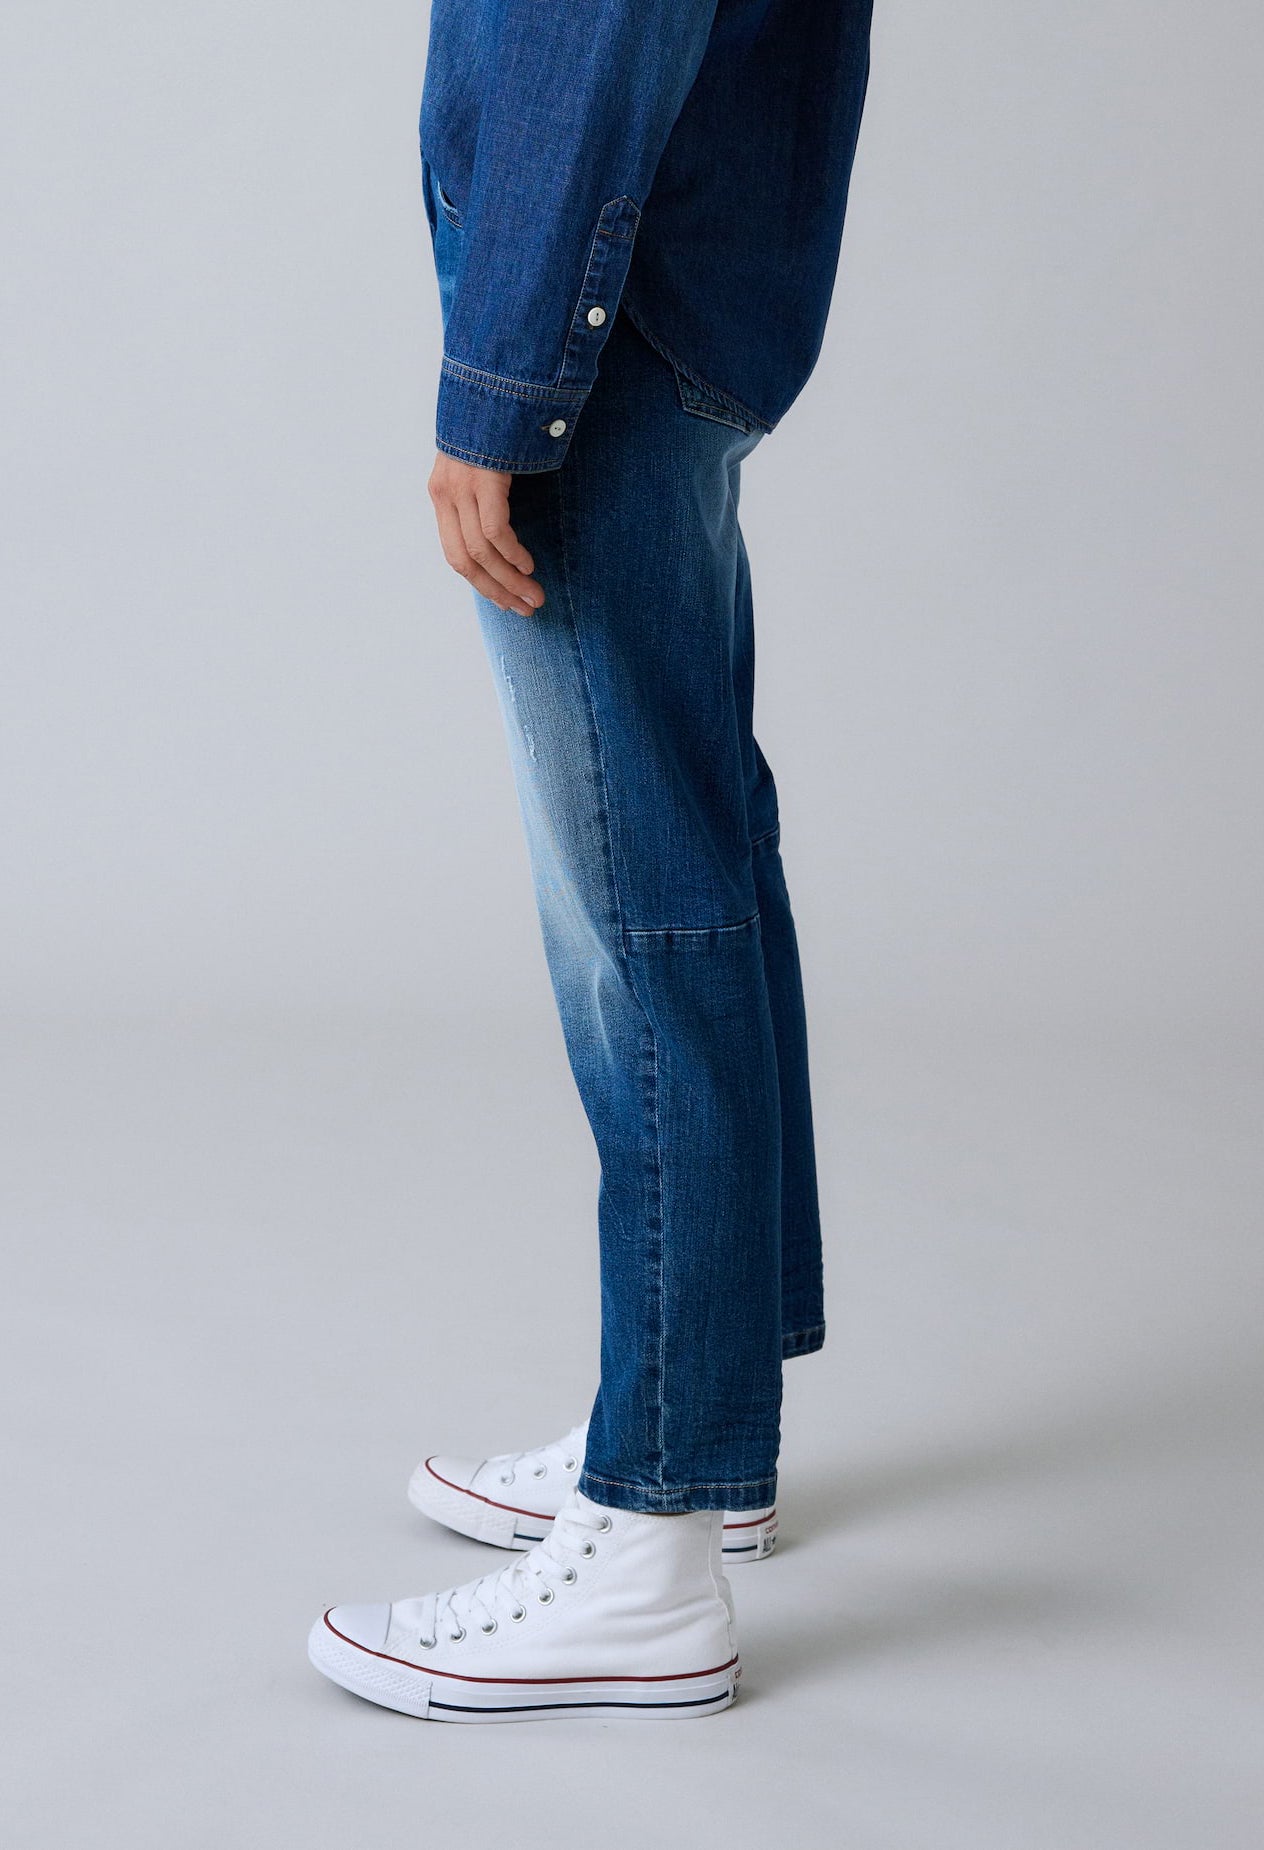 Liandra Horizon Jeans